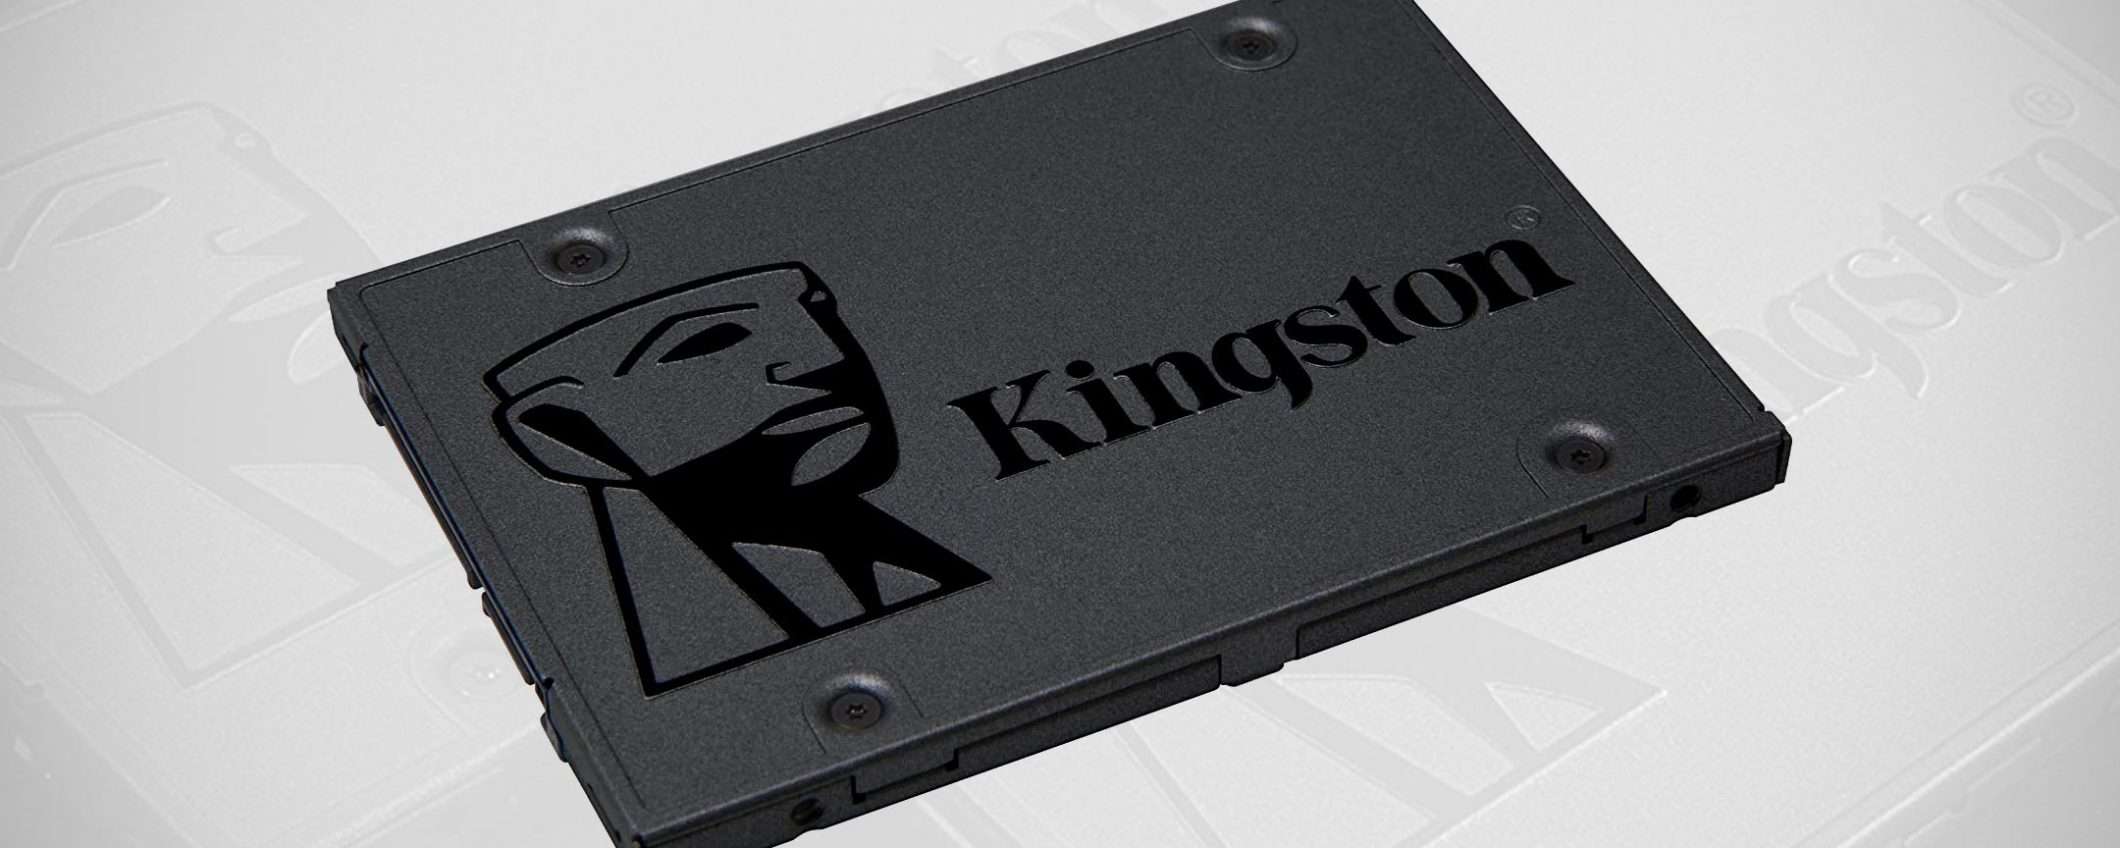 SSD Kingston A400 da 240 GB a soli 24€: prezzo BOMBA!